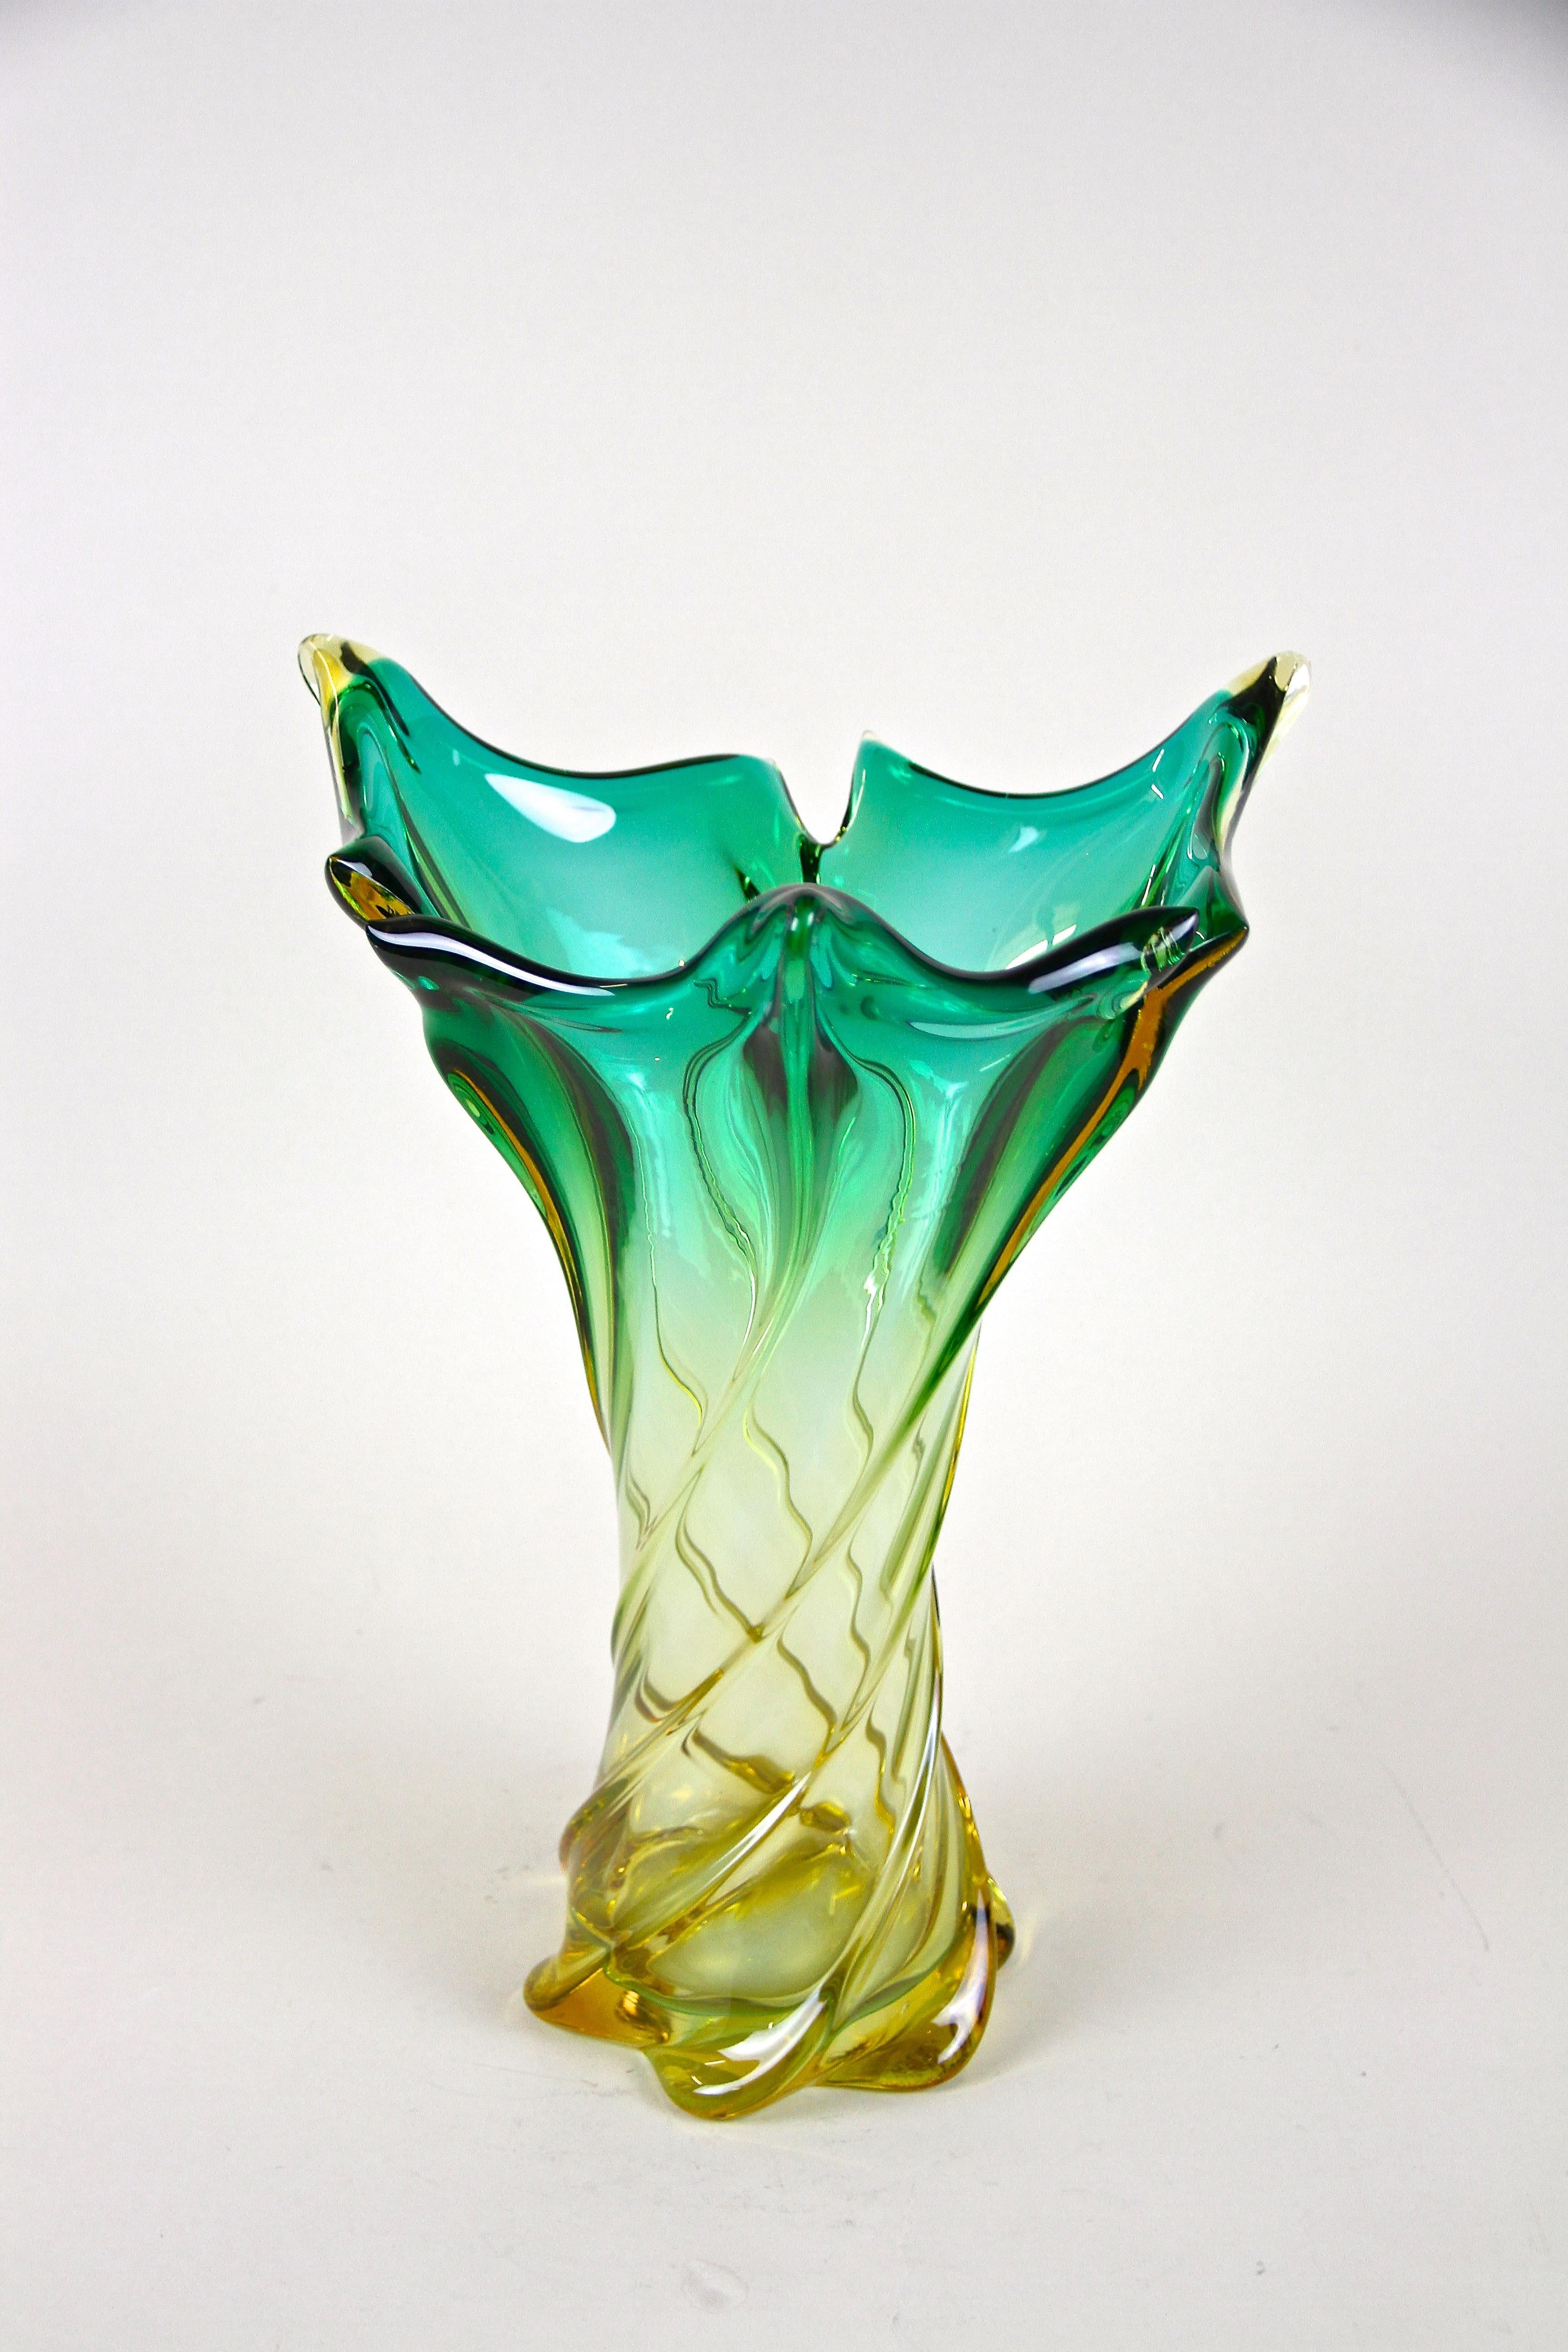 Wunderschön geformte, große Vase aus Muranoglas aus der Mitte des Jahrhunderts, aus den berühmten Werkstätten in Italien um 1960. Ein außergewöhnlicher Artikel mit gedrehtem Körper und fantastischer Färbung. Von leuchtenden Grüntönen über Gelb bis